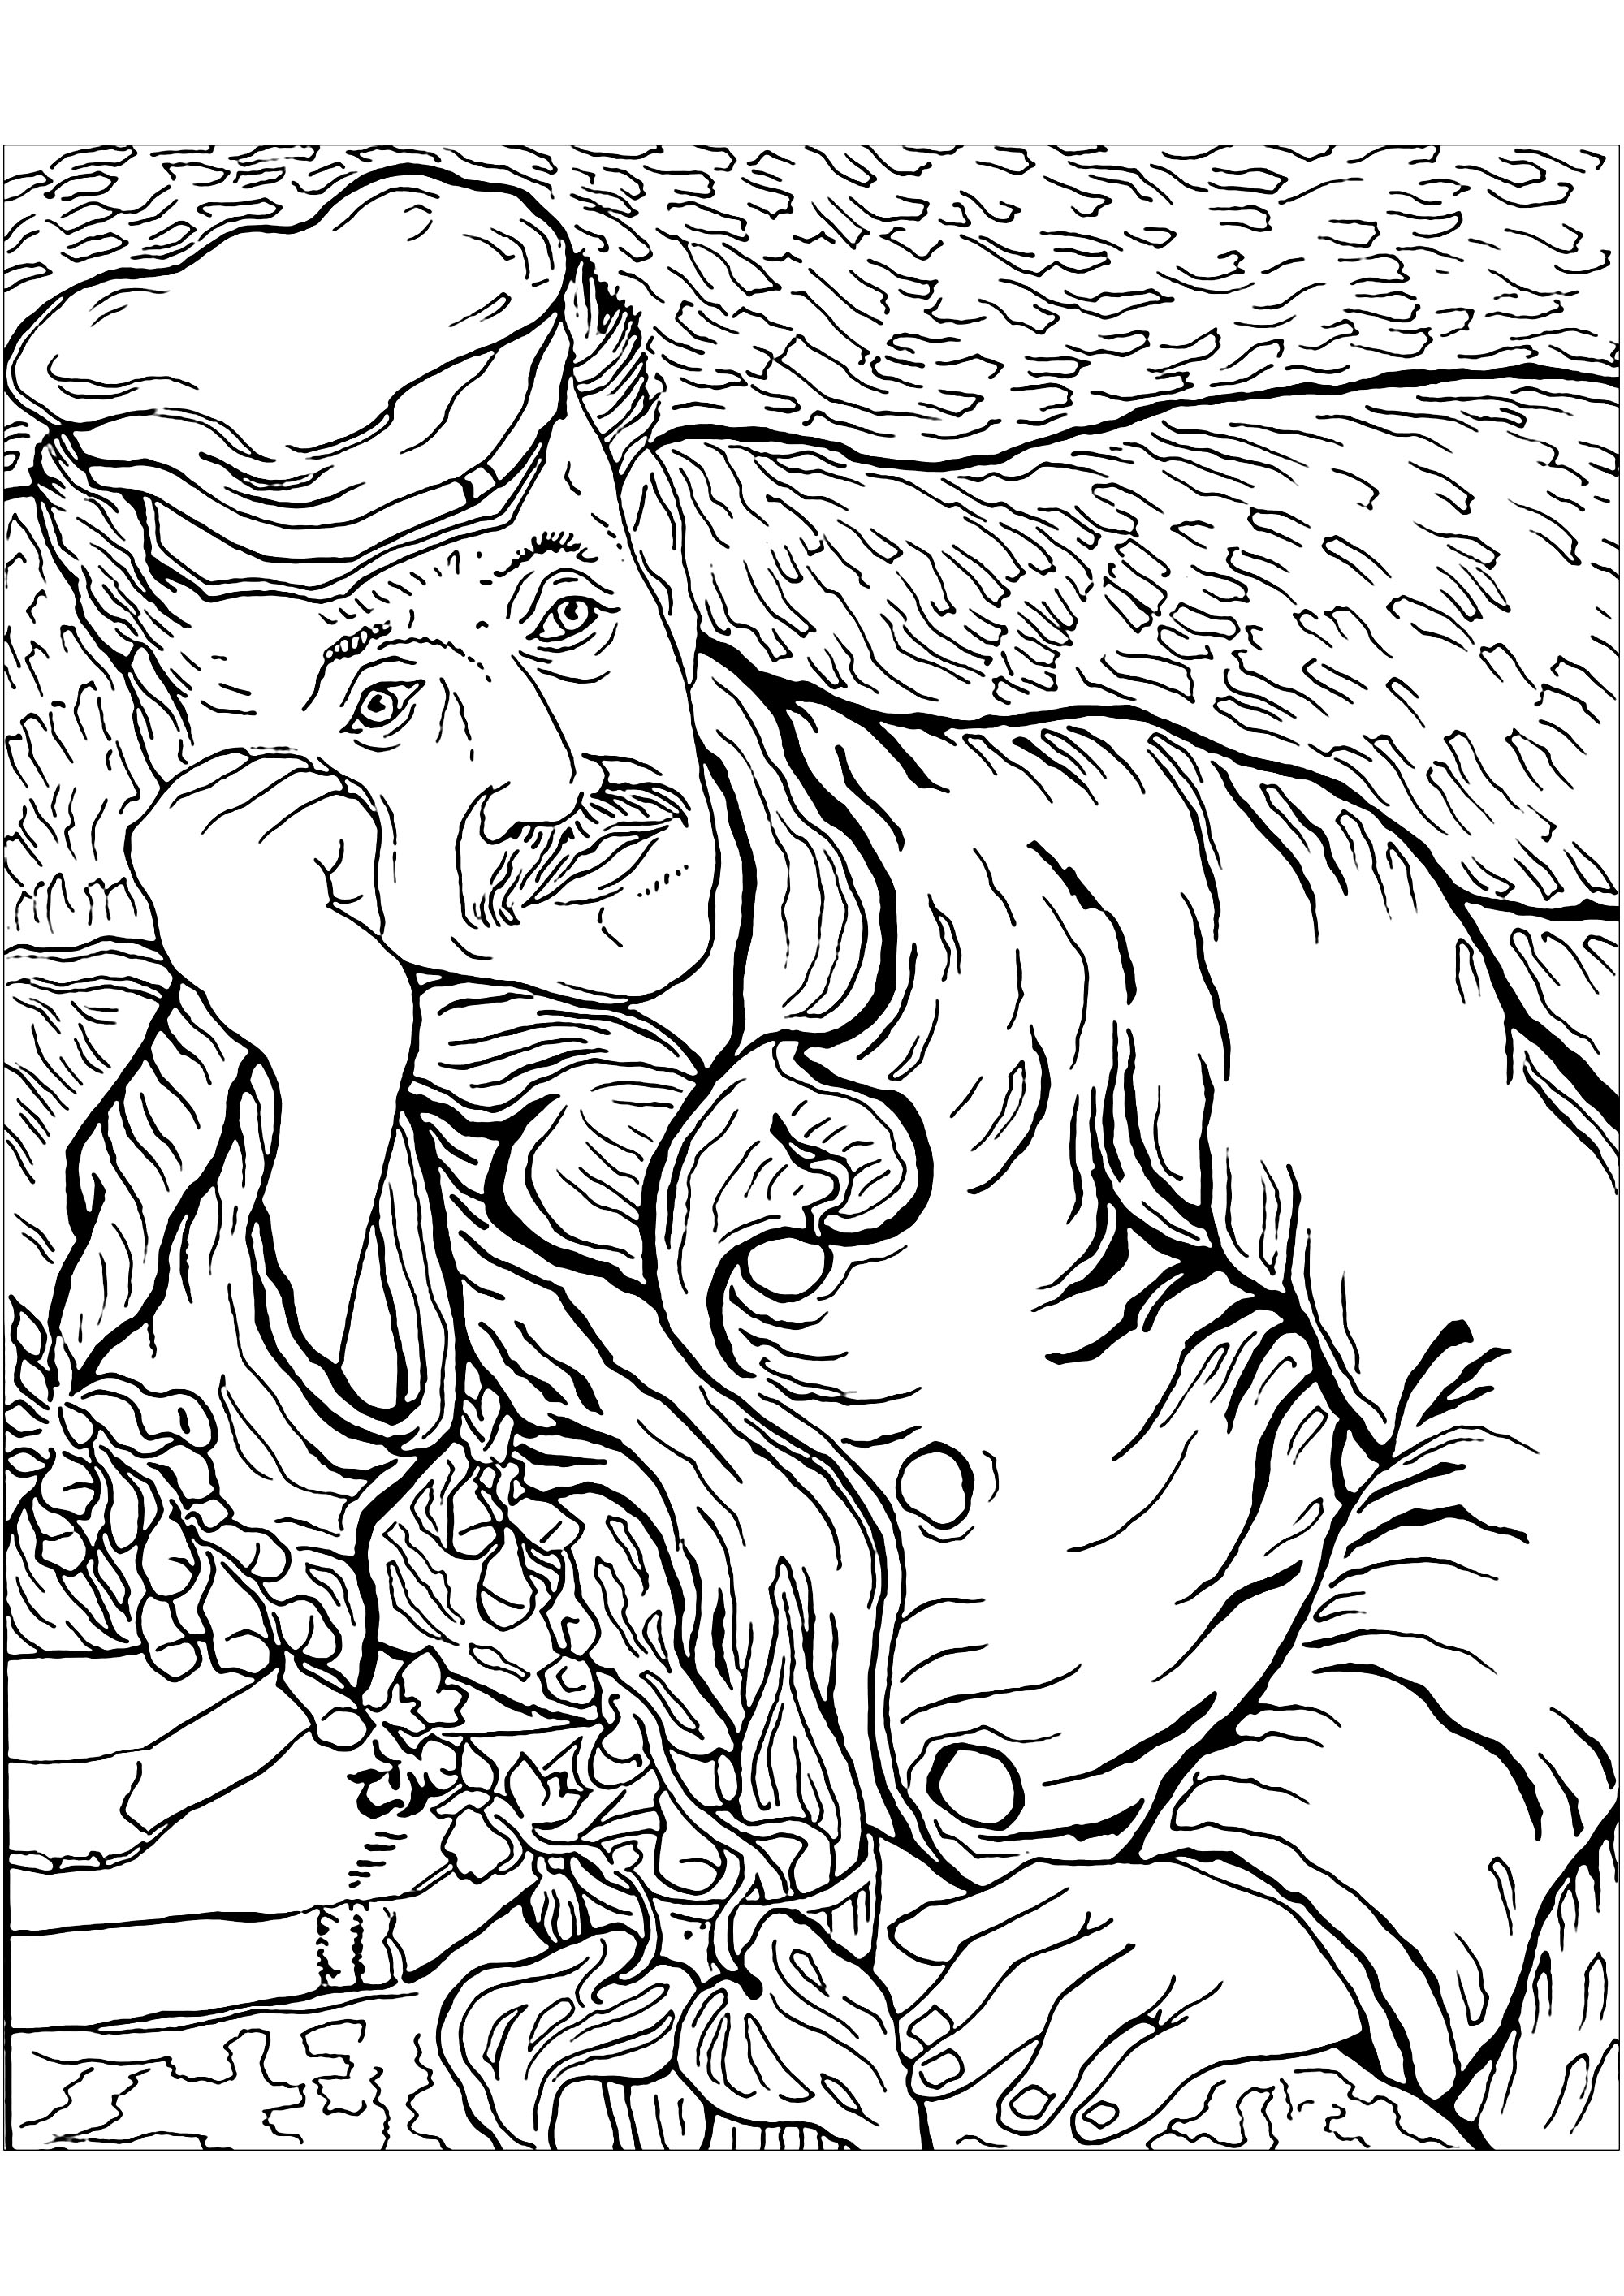 Coloreado basado en un cuadro de Vincent Van Gogh: Portrait du Docteur Gachet (1890). El Dr. Gachet, figura clave en el último periodo de Vincent Van Gogh en Auvers, era un médico homeópata con una amplia gama de intereses, incluida la quiromancia, y una gran pasión por las artes. Era grabador y mantuvo relaciones con artistas de renombre como Manet, Monet, Renoir y Cézanne. Tras su internamiento en Saint-Rémy-de-Provence, Van Gogh, por recomendación de su hermano Theo, fue a ver al especialista en psiquiatría Dr. Gachet. El Dr. Gachet apoyó a Vincent en su lucha contra sus ansiedades y le ofreció un entorno favorable para la creación artística.Van Gogh pintó un retrato del Dr. Gachet que refleja un periodo de gran creatividad. El retrato muestra al doctor en una postura melancólica, símbolo de la agitación de la época. Sin embargo, la flor de la dedalera, conocida por sus propiedades curativas, aporta una nota de esperanza. A pesar de la ayuda del Dr. Gachet, van Gogh acabó sucumbiendo a sus demonios interiores y se quitó la vida, Artista : Art'Isabelle